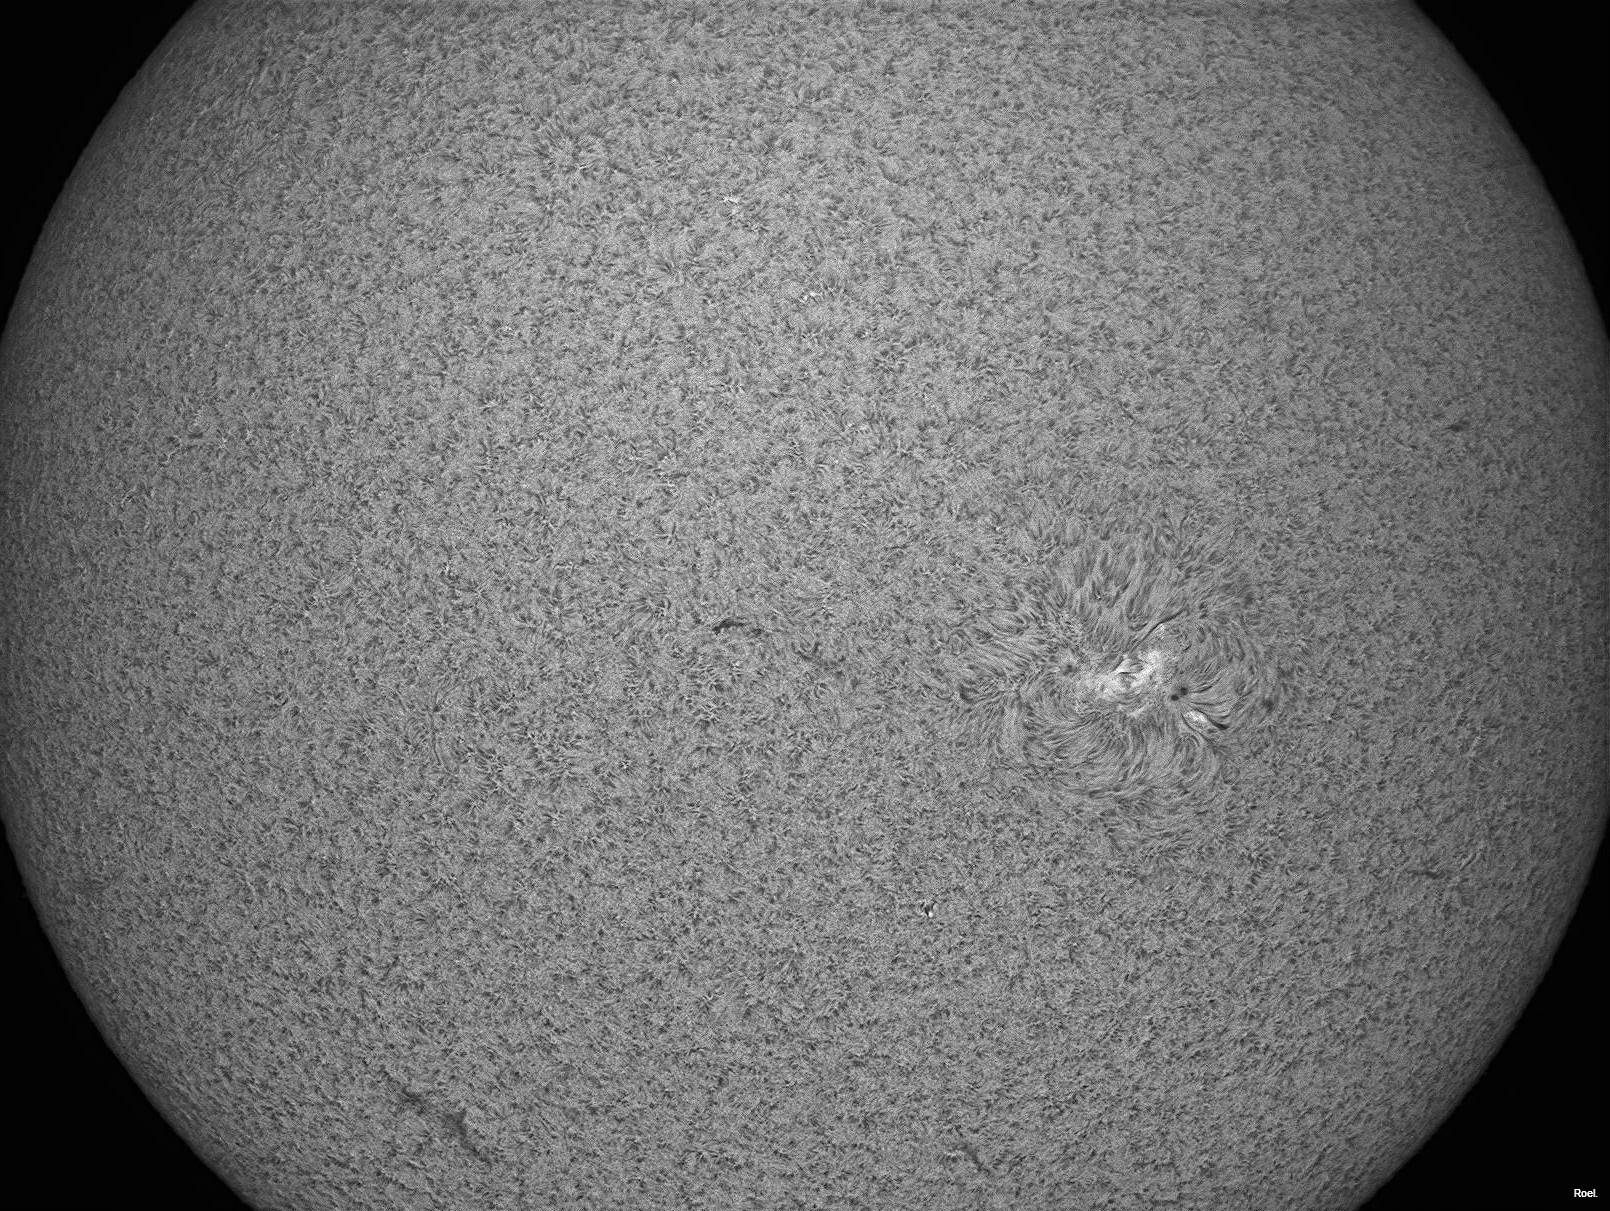 Sol del12 de febrero de 2018-Solarmax 90-DS-BF30-X-1an.jpg